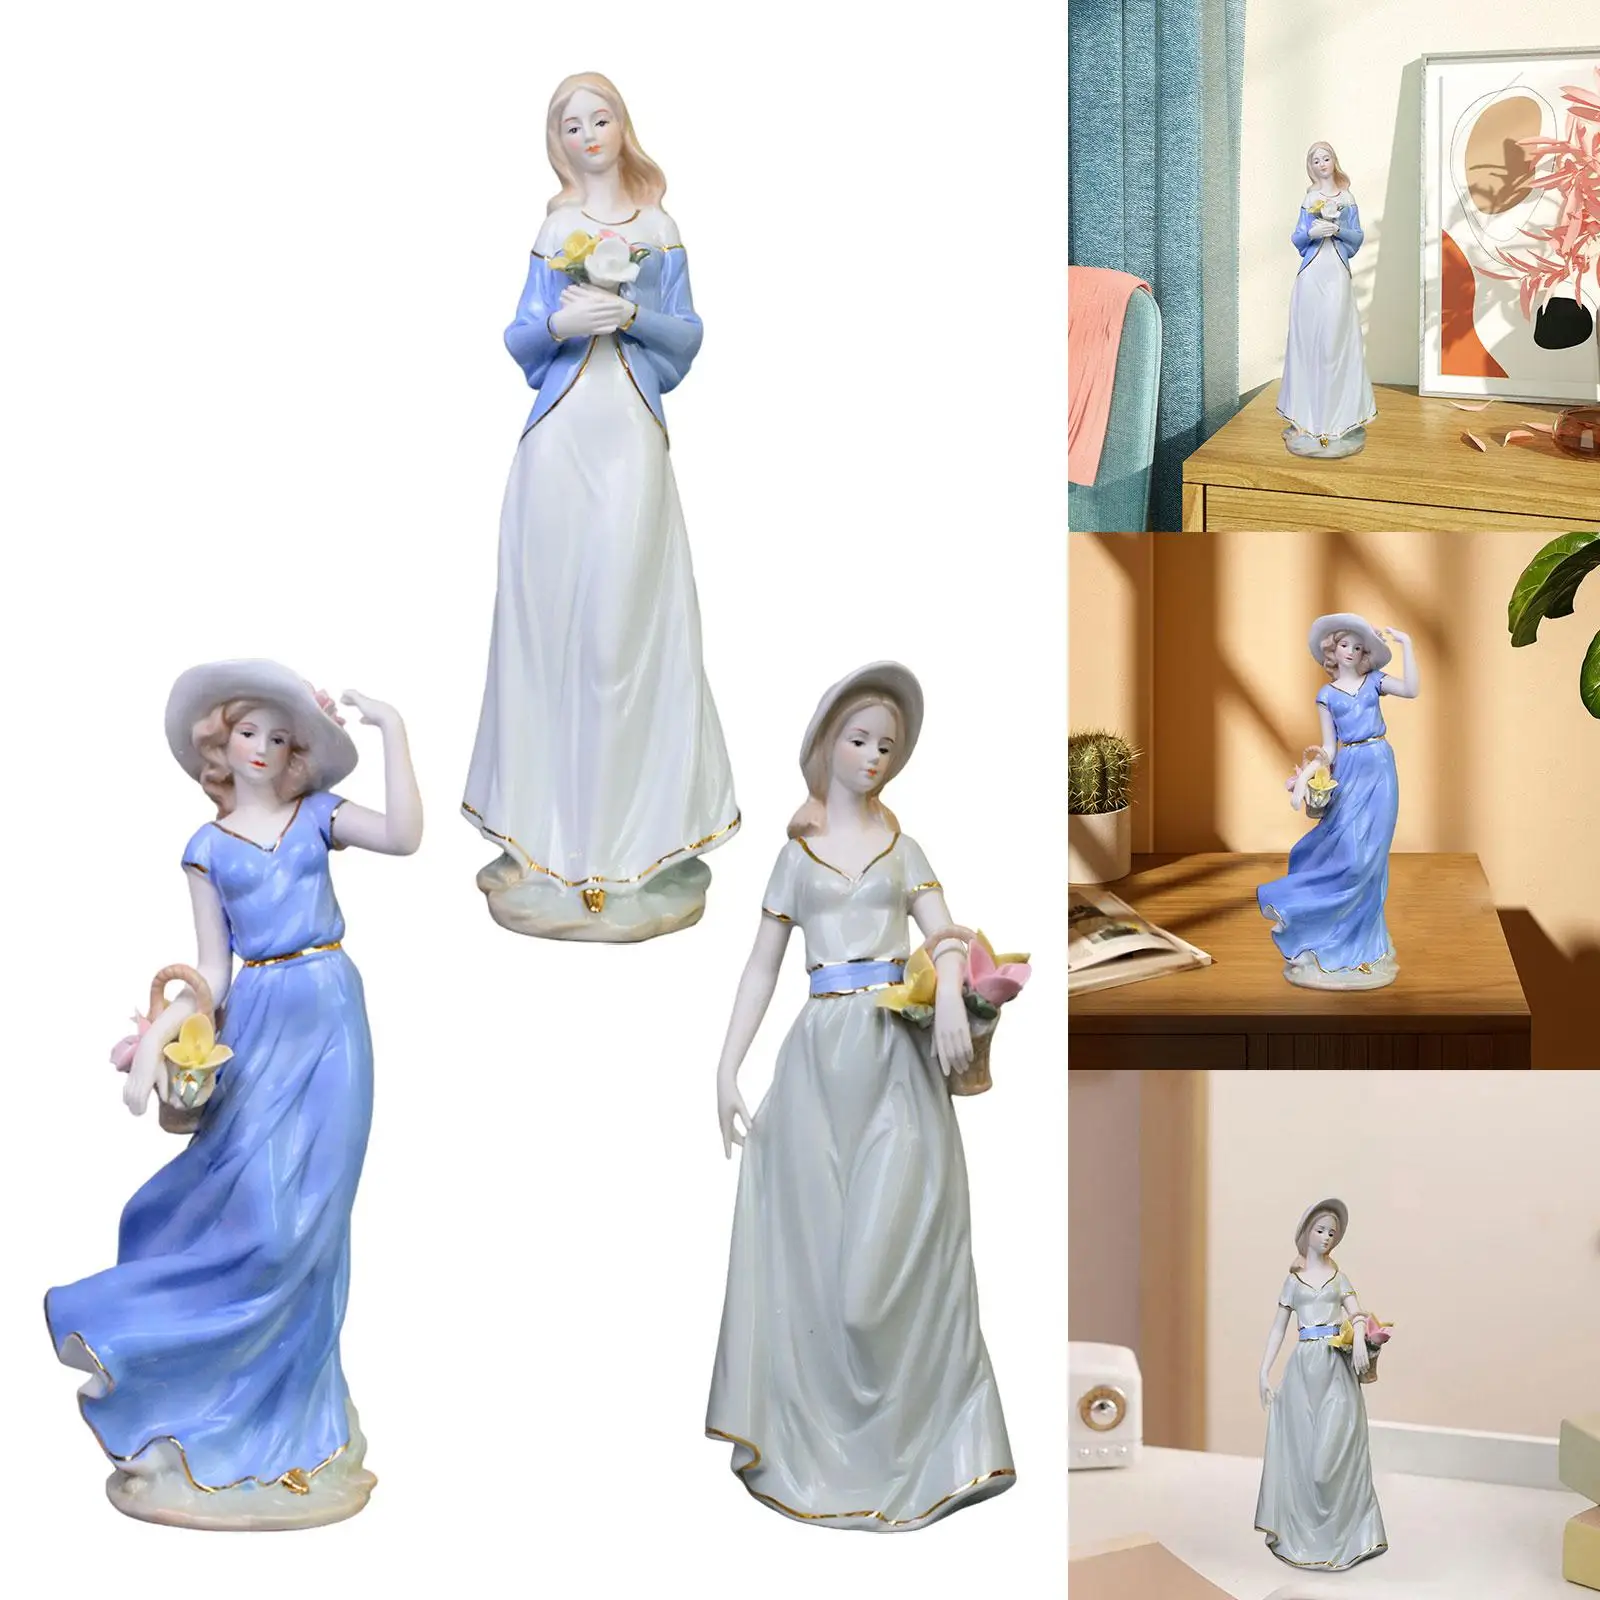 Figurka dziewczyny porcelanowa figurka słodka nowoczesna figurka dekoracyjna porcelana figurka dekoracja domu do biura regał na stół